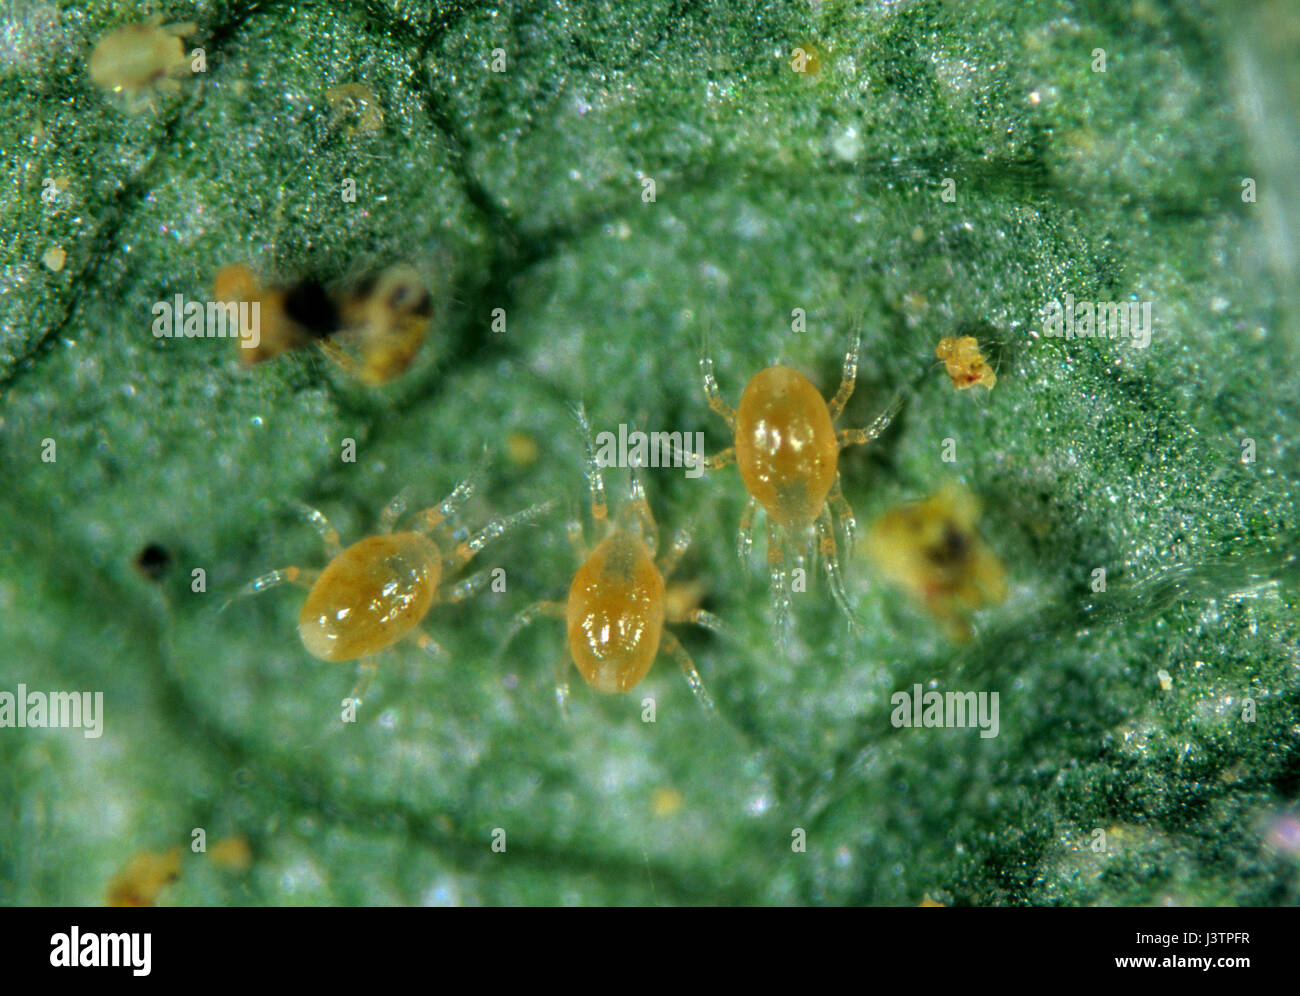 Predatori di acari (Phytoseiulus persimilis) su una foglia con la preda acari Foto Stock